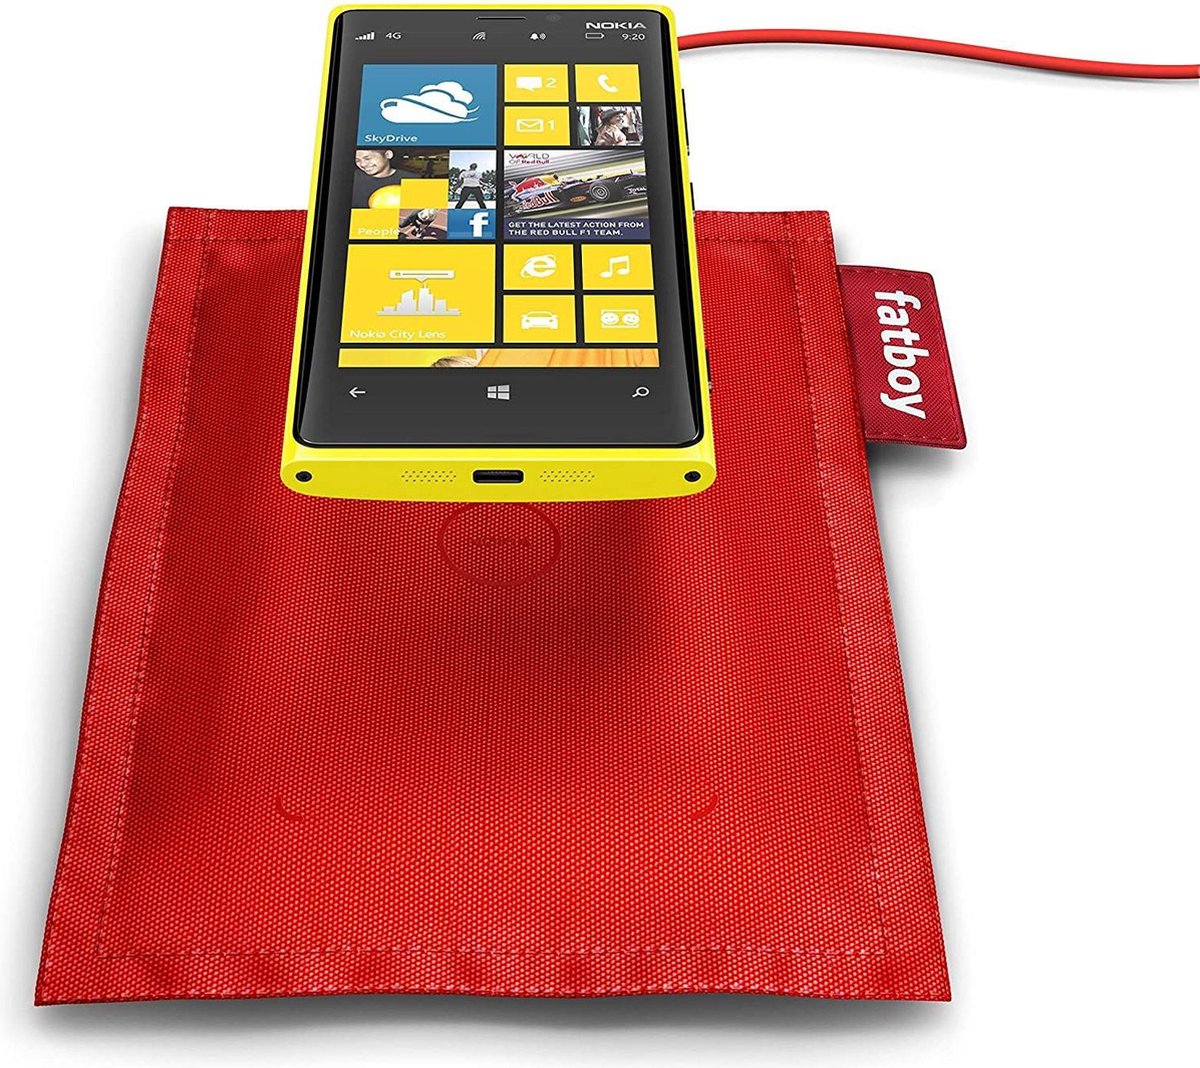 Nokia DT-901 draadloos laadkussen van Fatboy - rood | bol.com